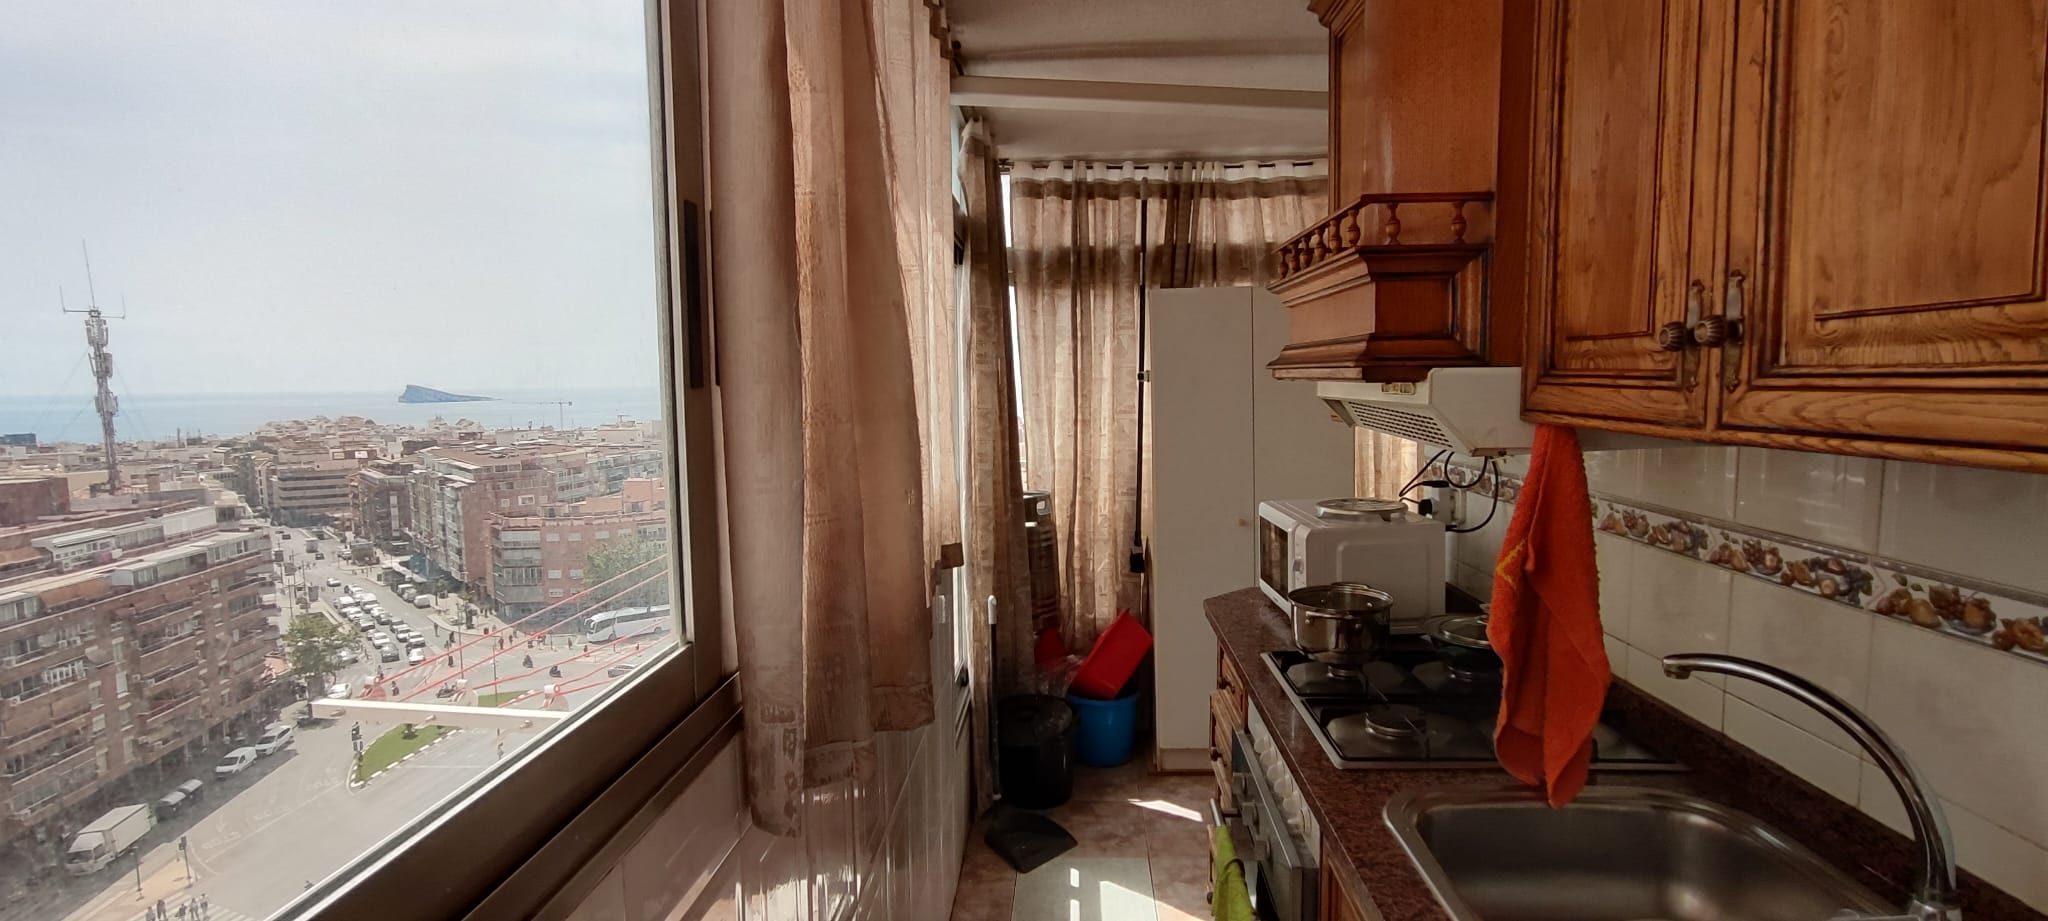 Appartement met zeezicht op 900 m van het strand.